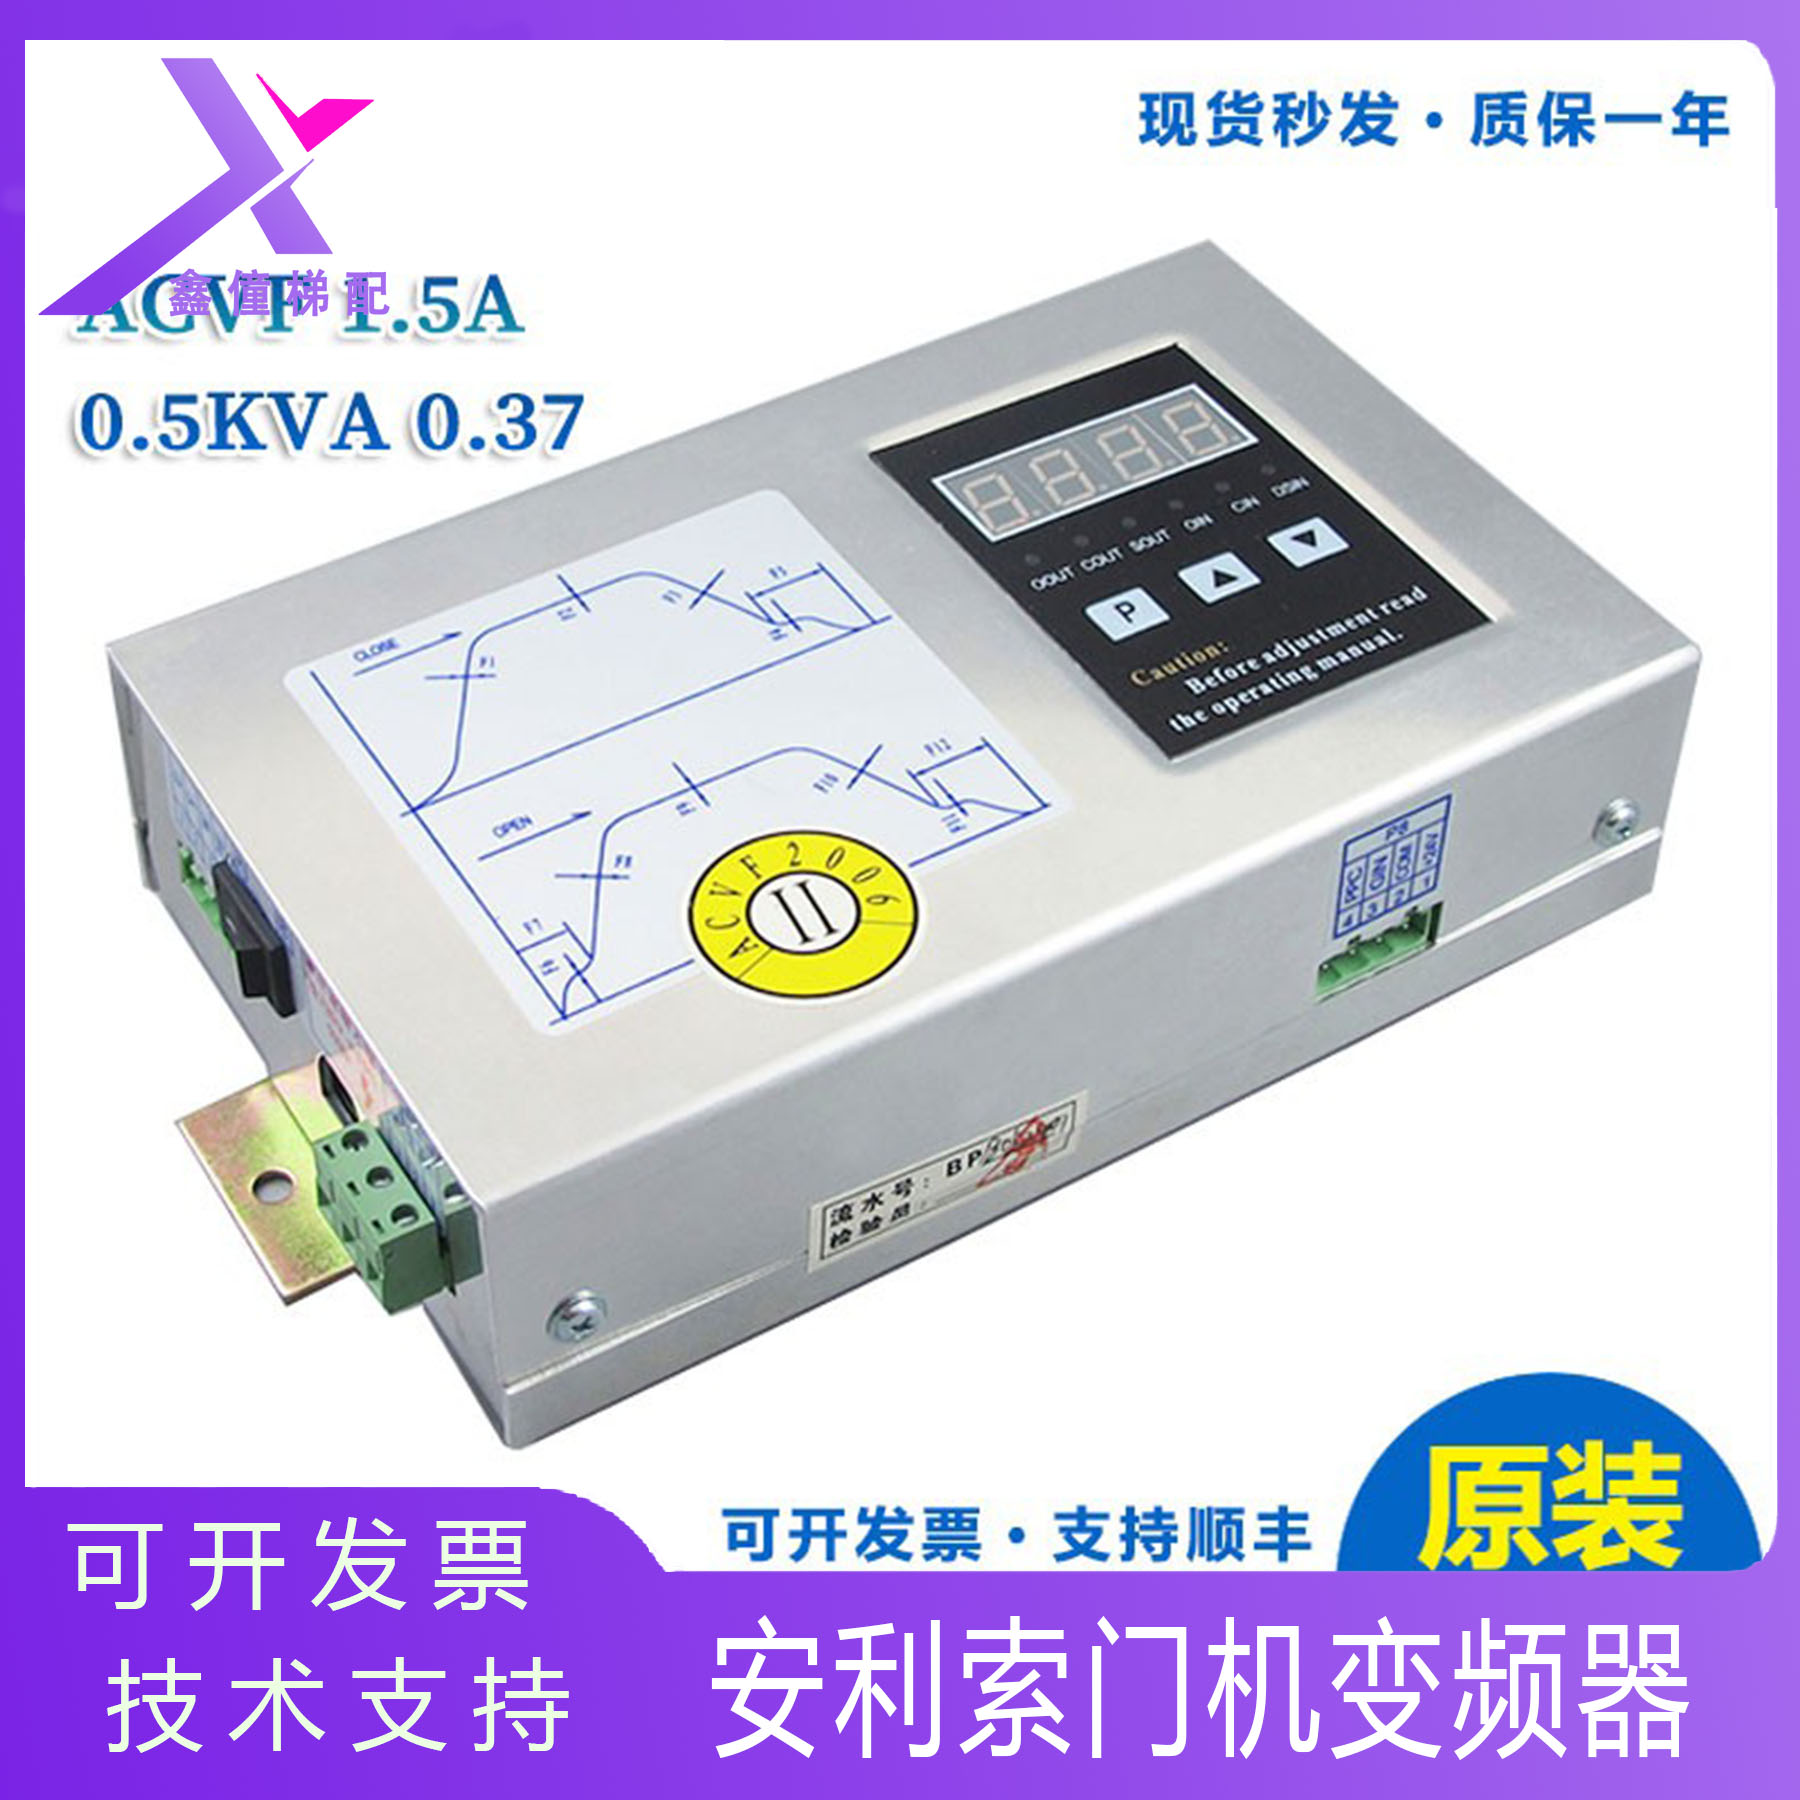 安利索门机盒控制器门机变频器TYPEACVF 1.5A 0.5KVA 0.37 全新